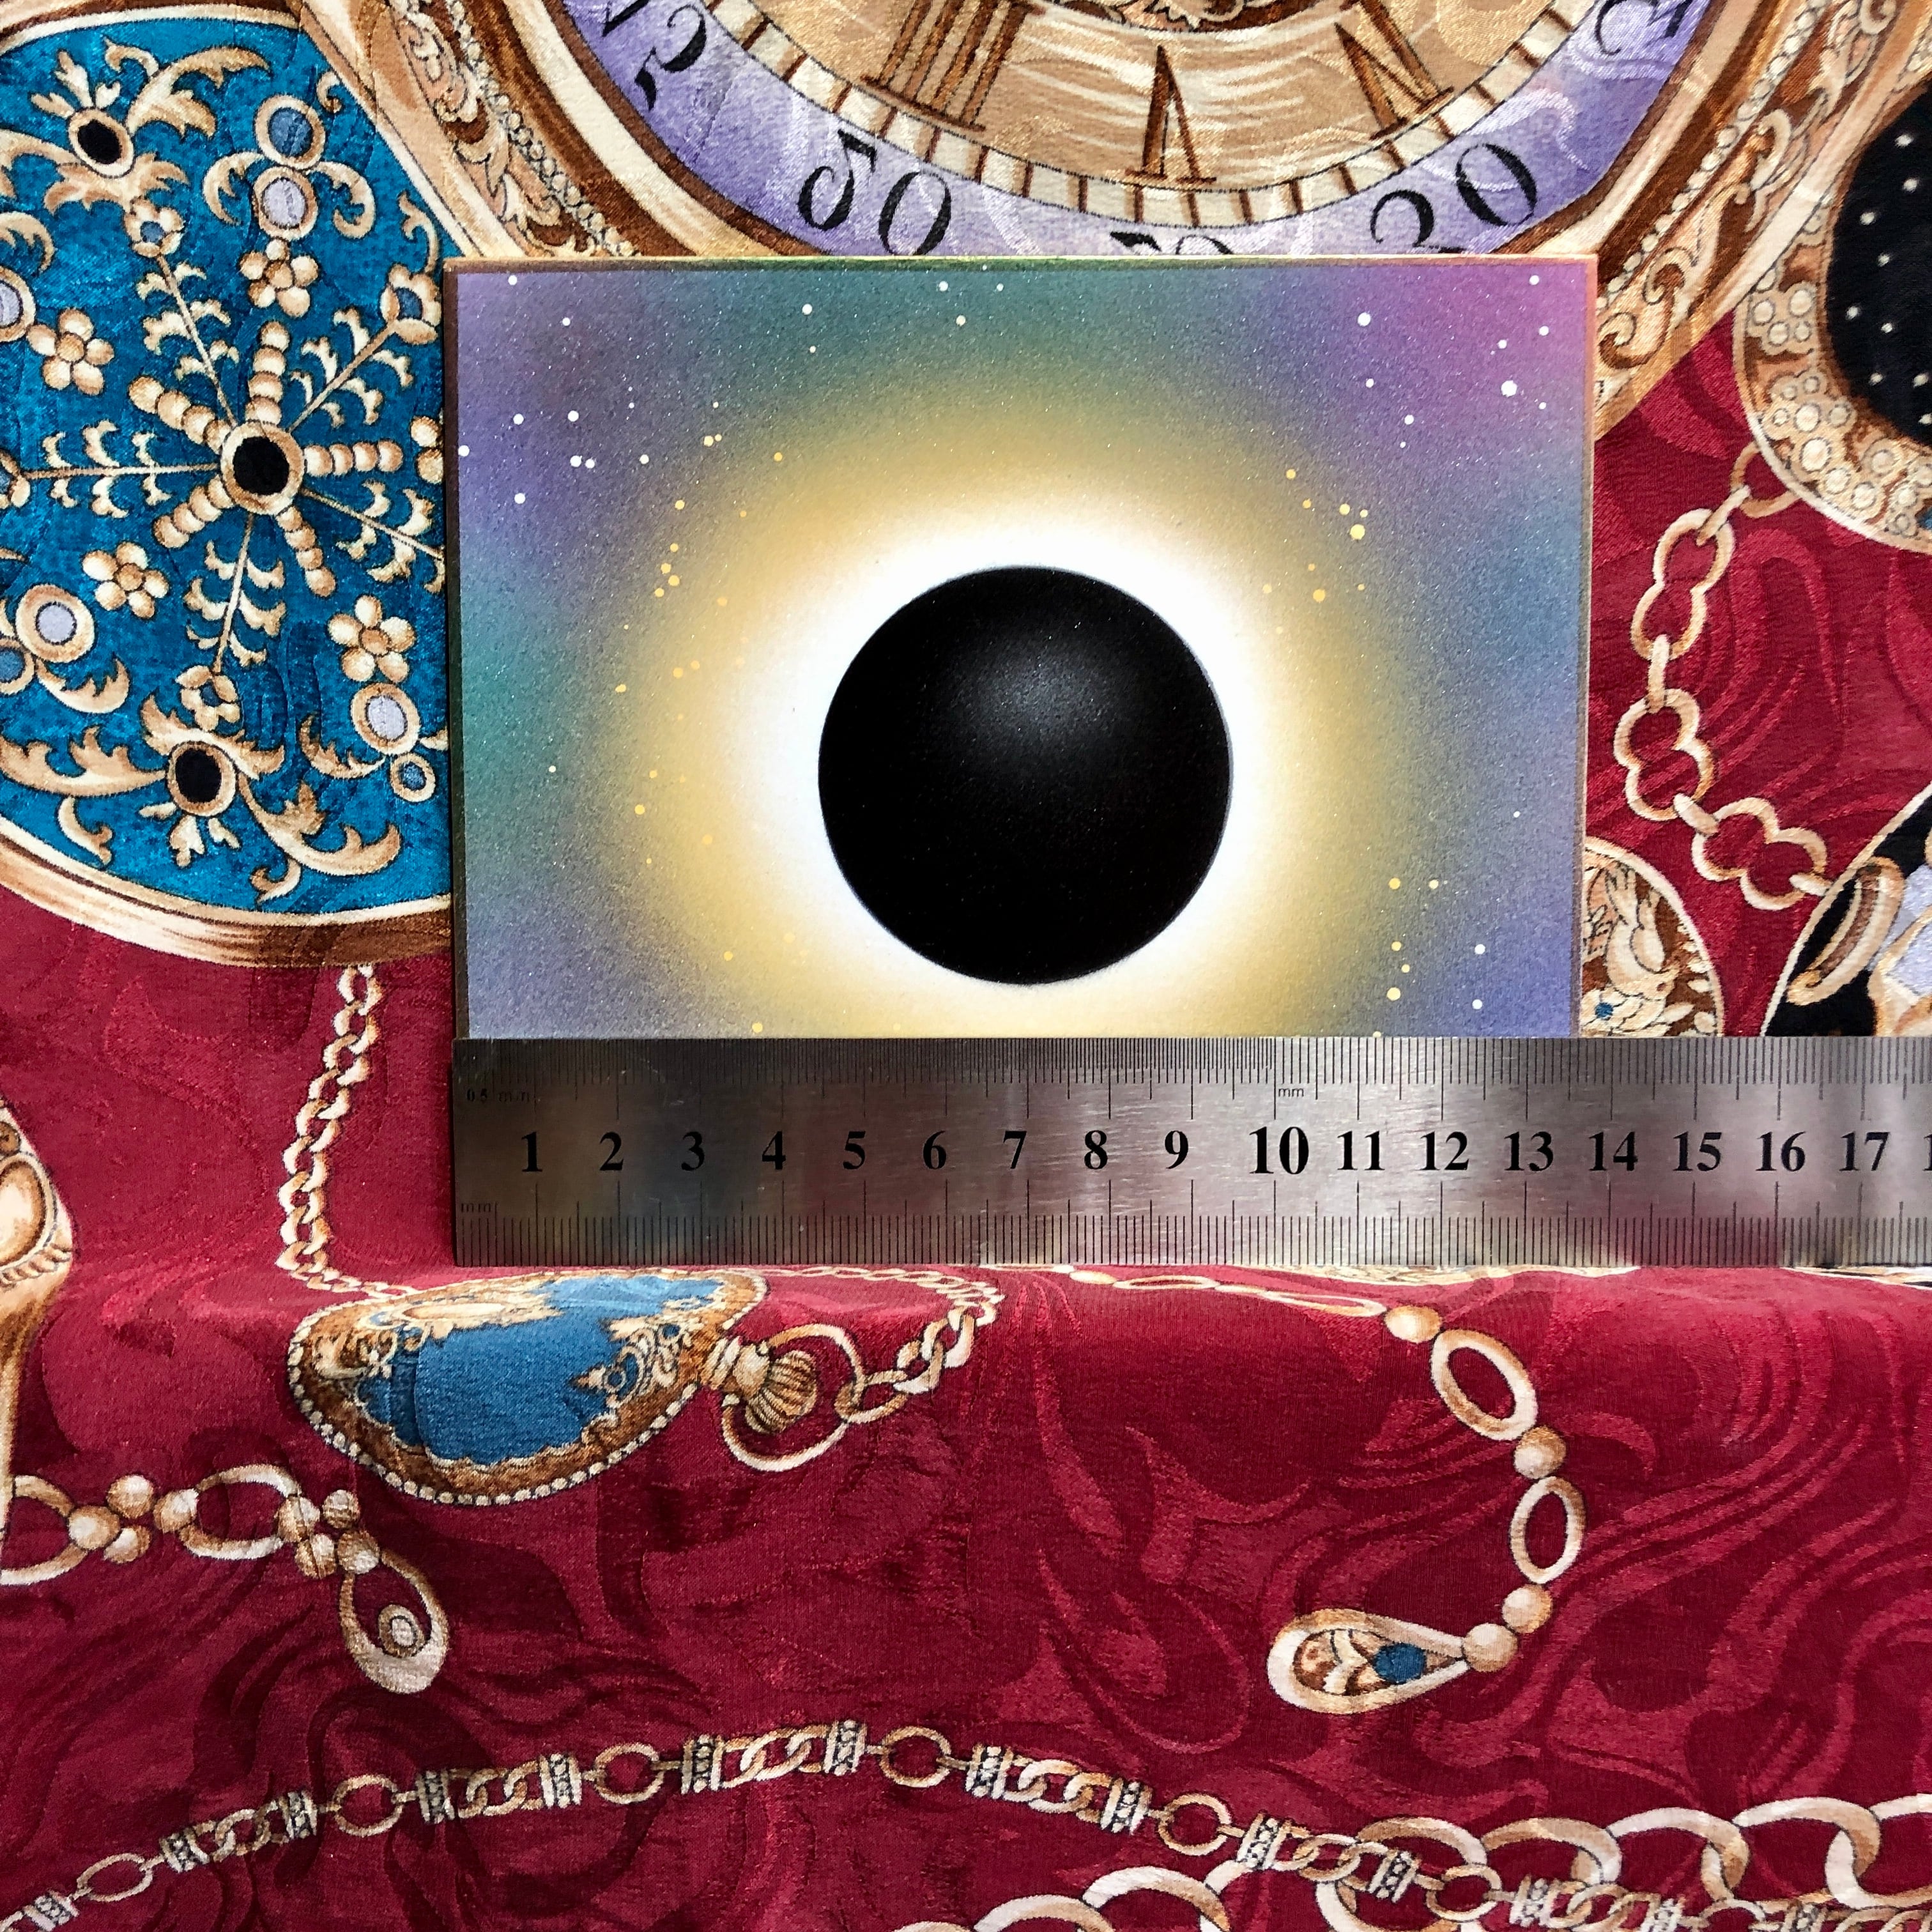 経営エナジーアート⭐︎銀河系太陽ブラックホールボルテックス渦 宇宙の法則瞑想開運絵画